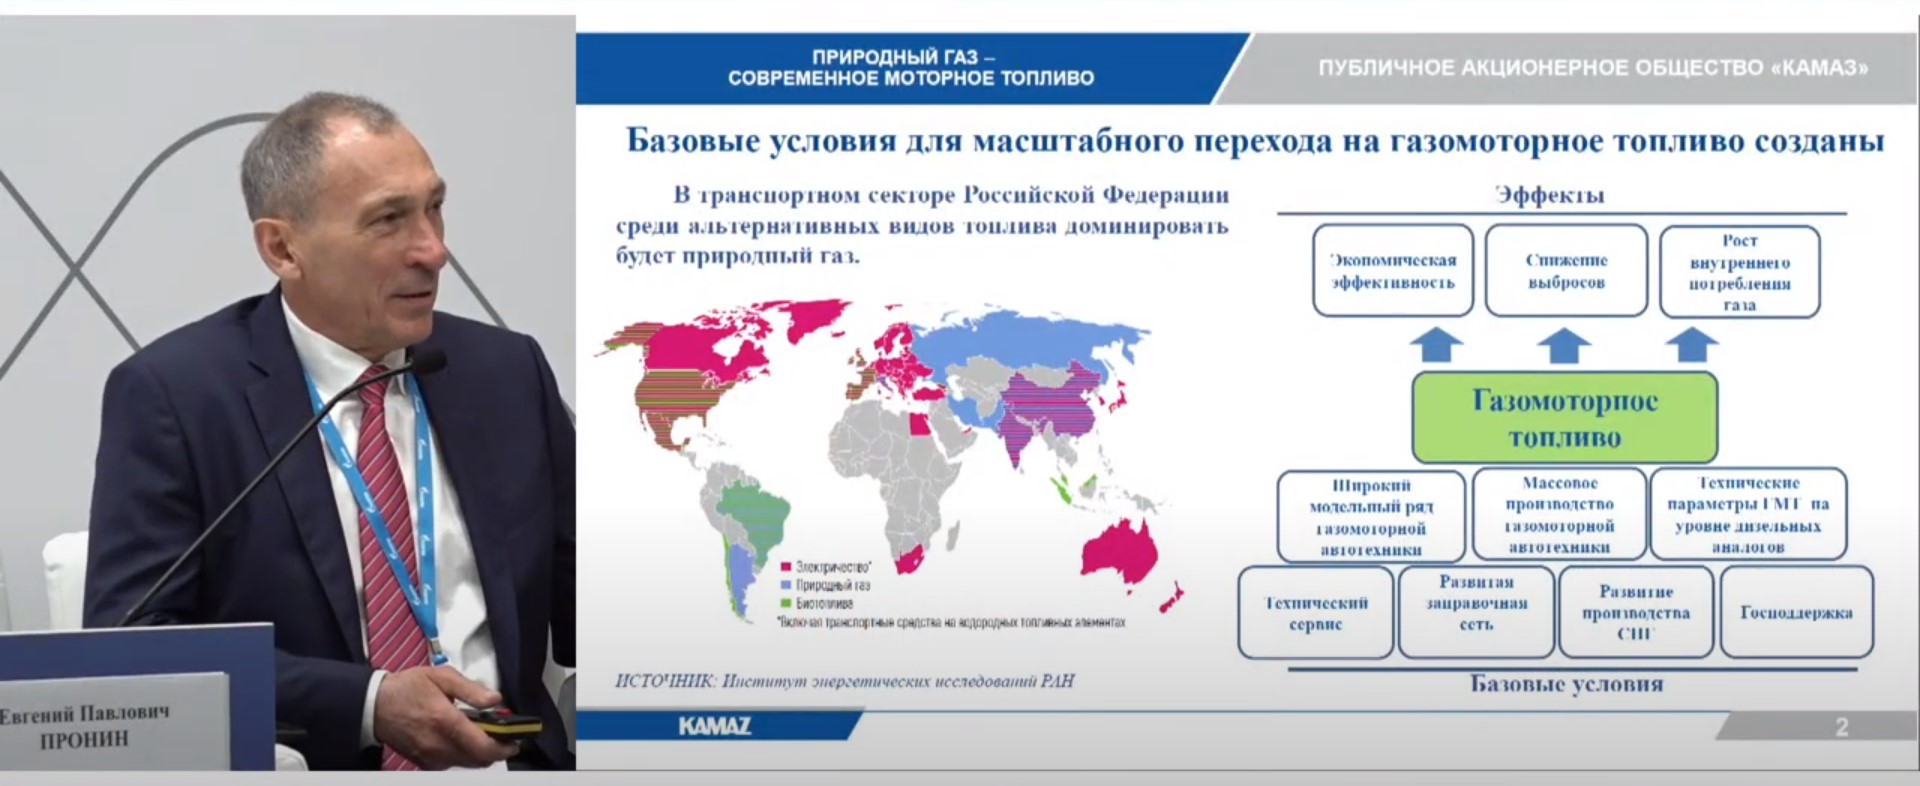 «КАМАЗ»: западные санкции не повлияли на производство газомоторной техники 